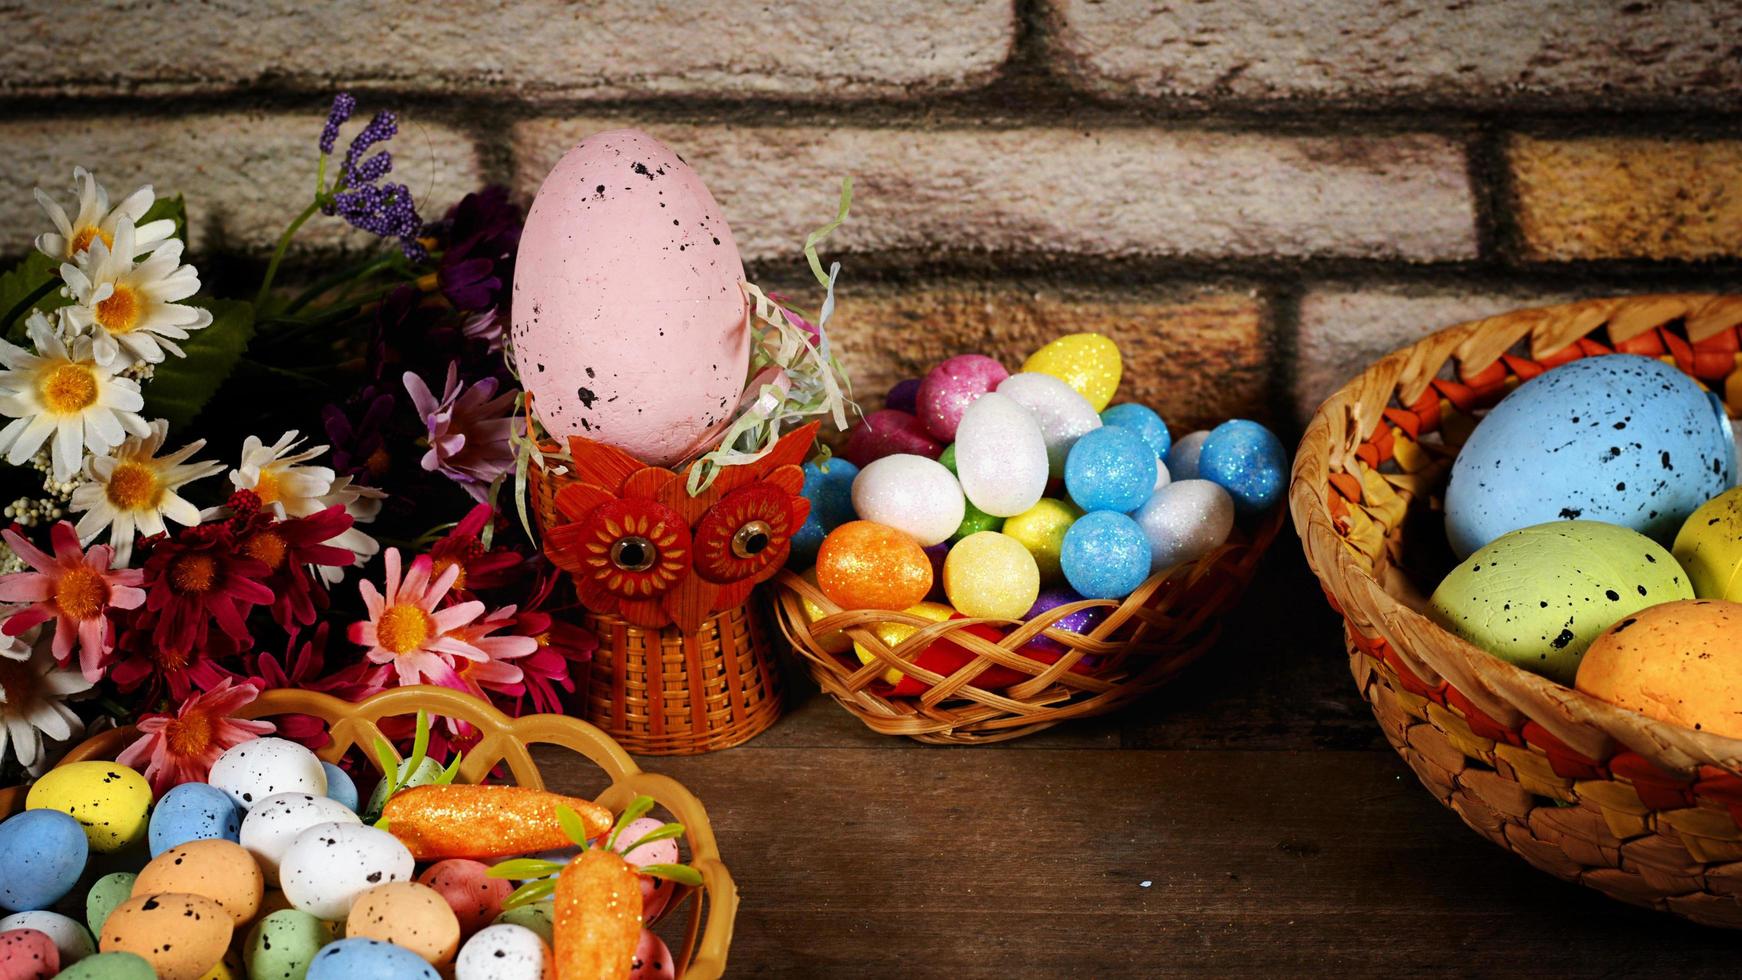 colorate uova pasquali tradizionali di pasqua foto